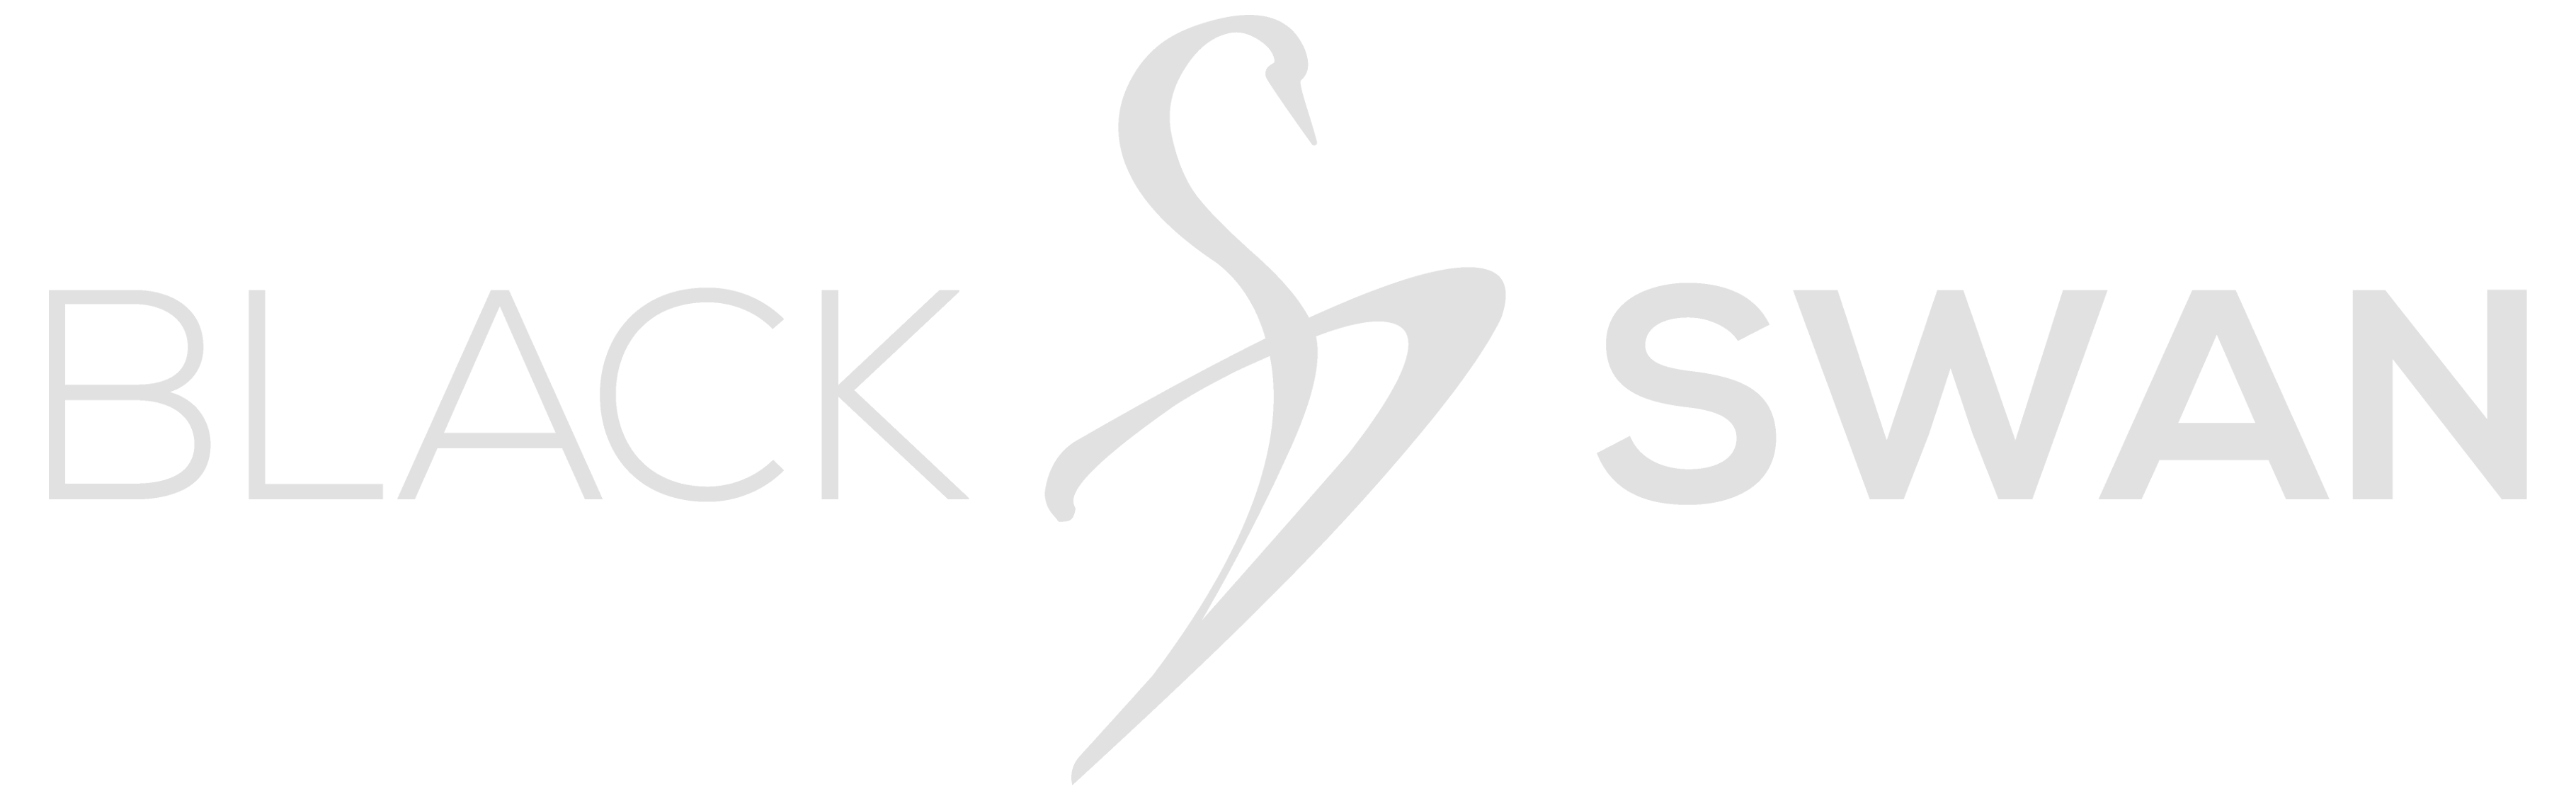 Logo BS